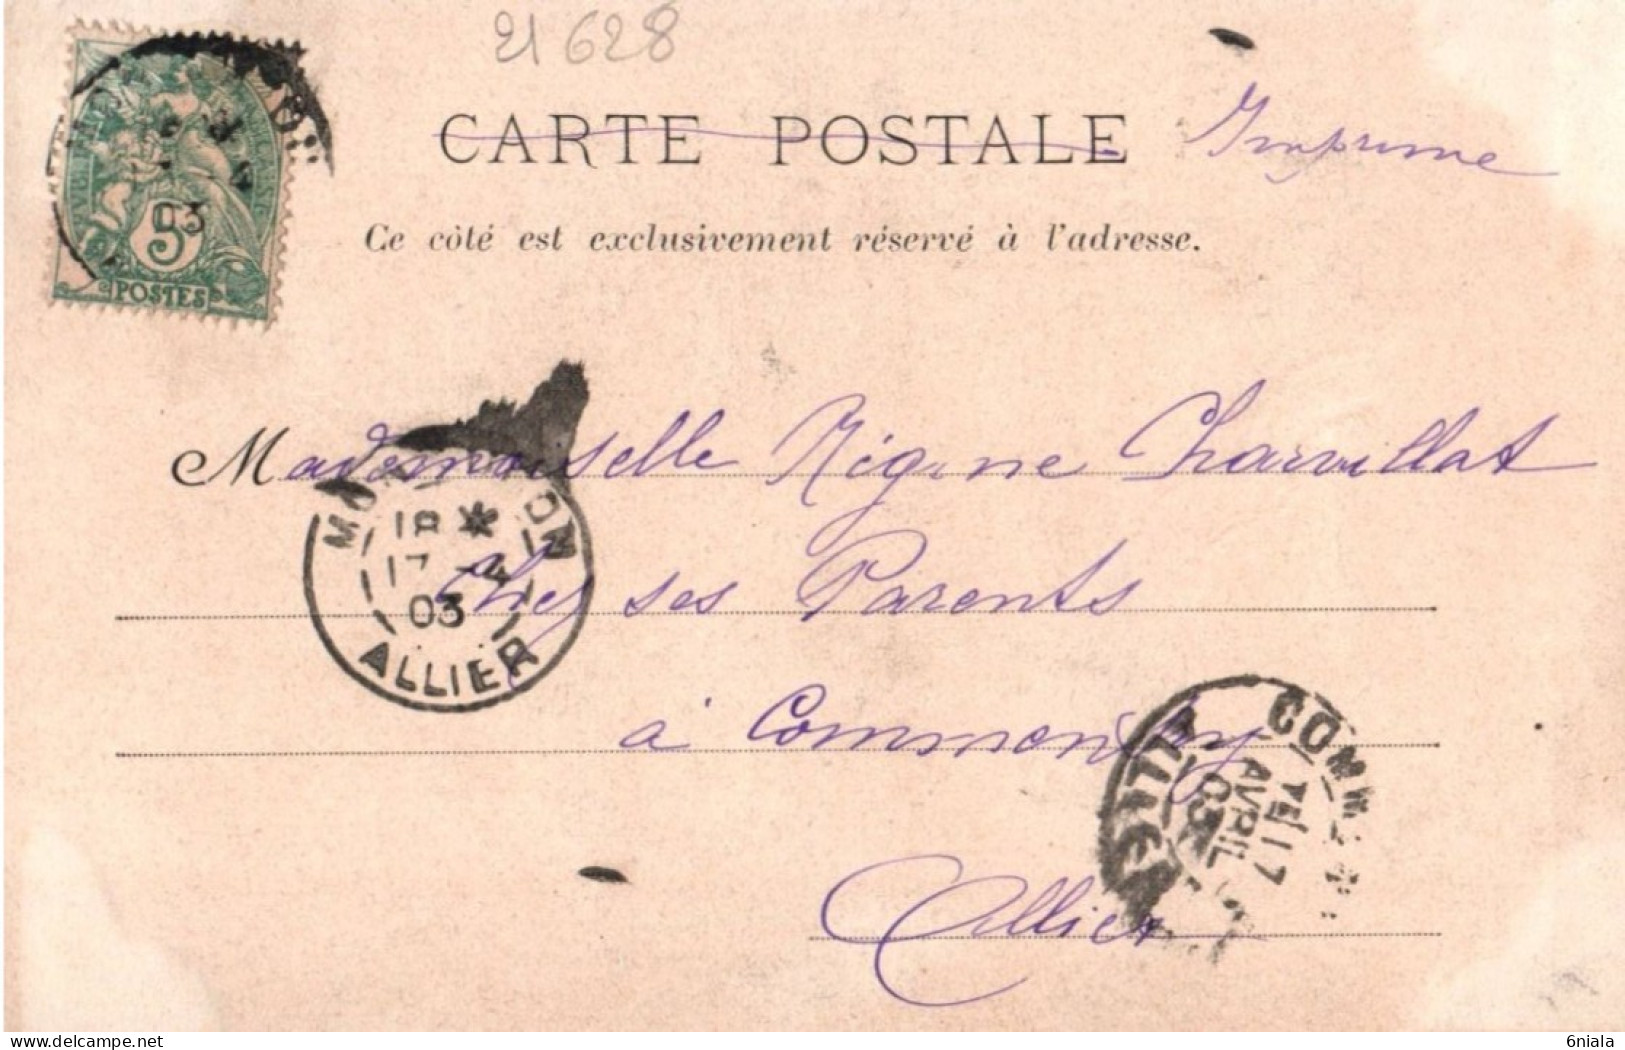 NOS VIEILLES CHANSONS Il était Une Bergère Collection Charier Saumur ( 21628 ) Chat , Moutons, Petite Fille 1903 - Fiabe, Racconti Popolari & Leggende